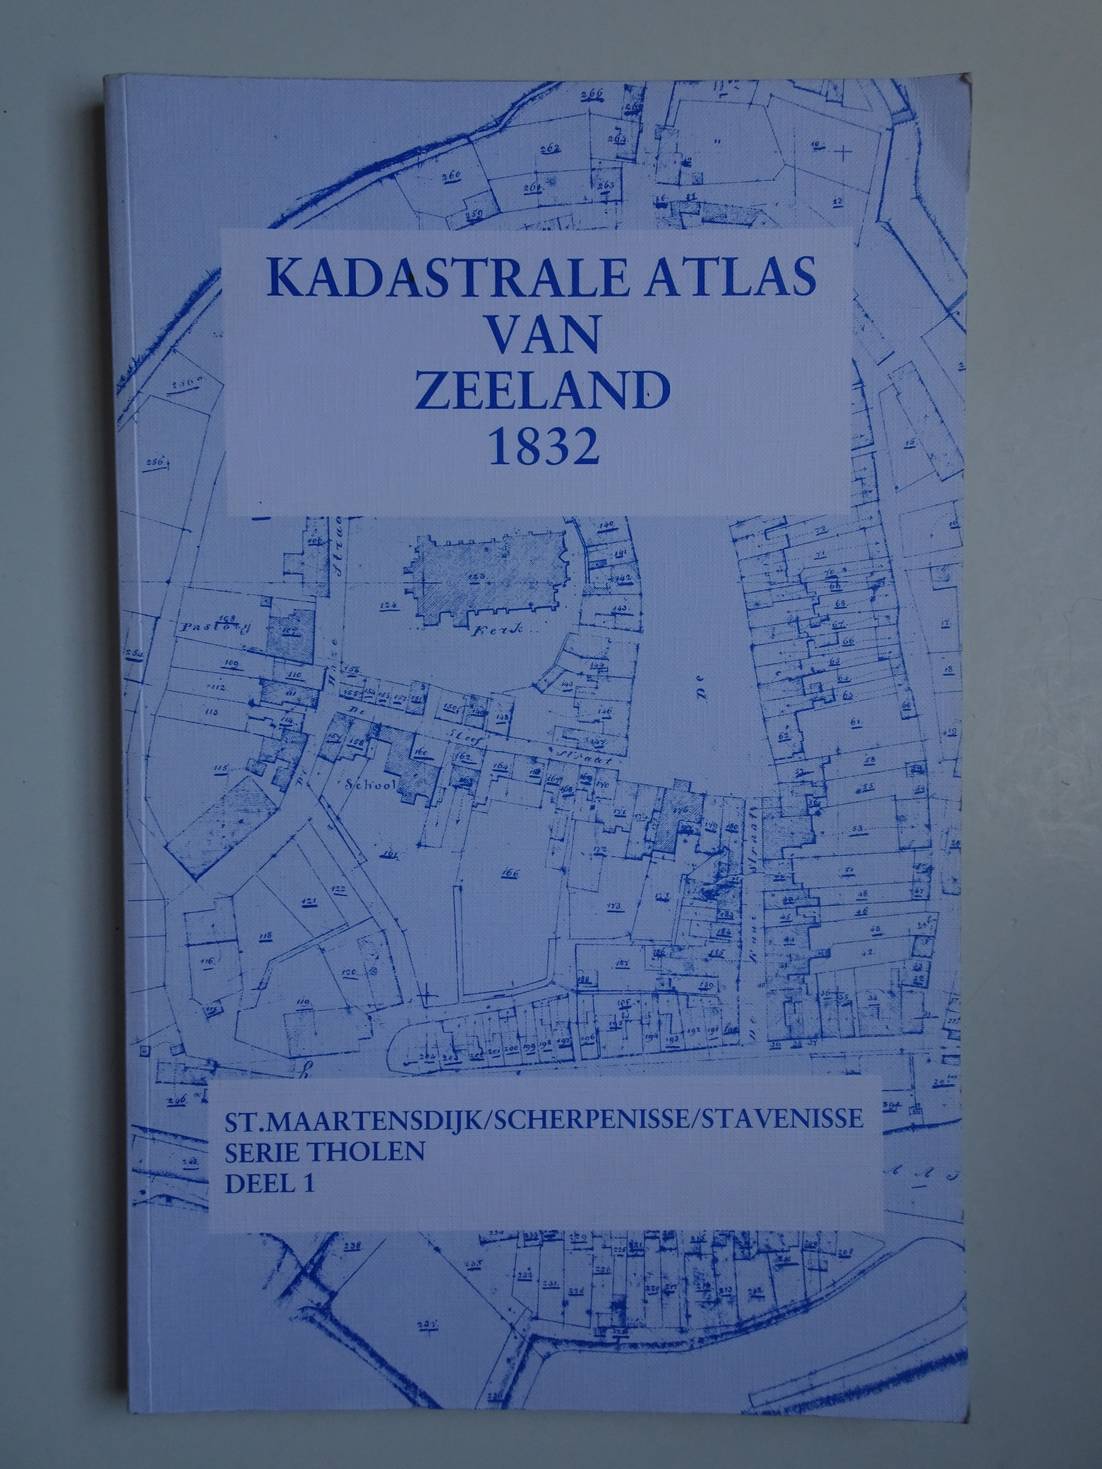  - Kadastrale atlas van Zeeland 1832. St. Maartensdijk / Scherpenisse / Stavenisse. Serie Tholen Deel 1.